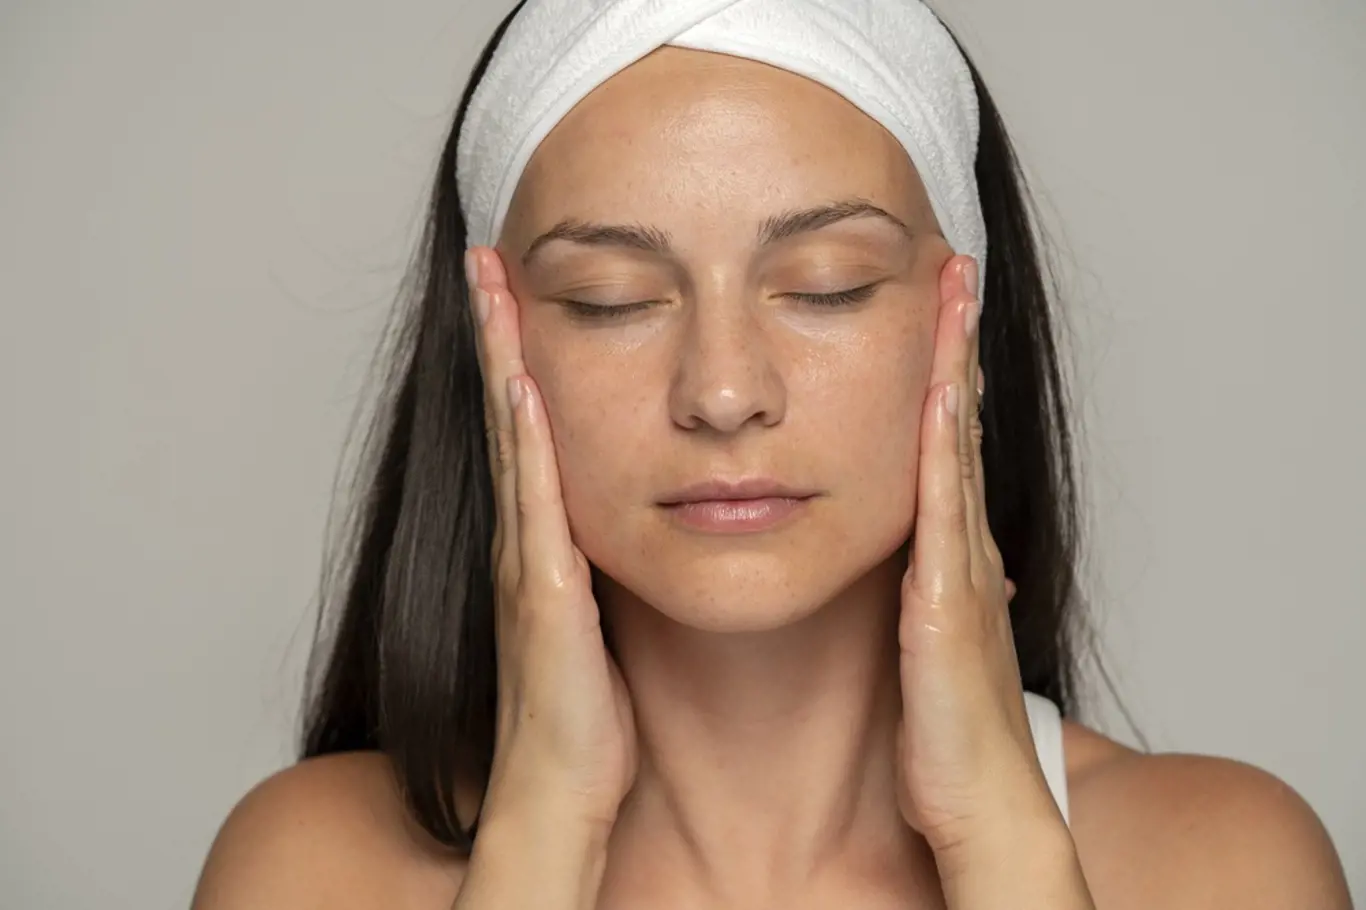 Obličejová jóga nebo gymnastika vám pomůže k tváři bez pytlů pod očima.